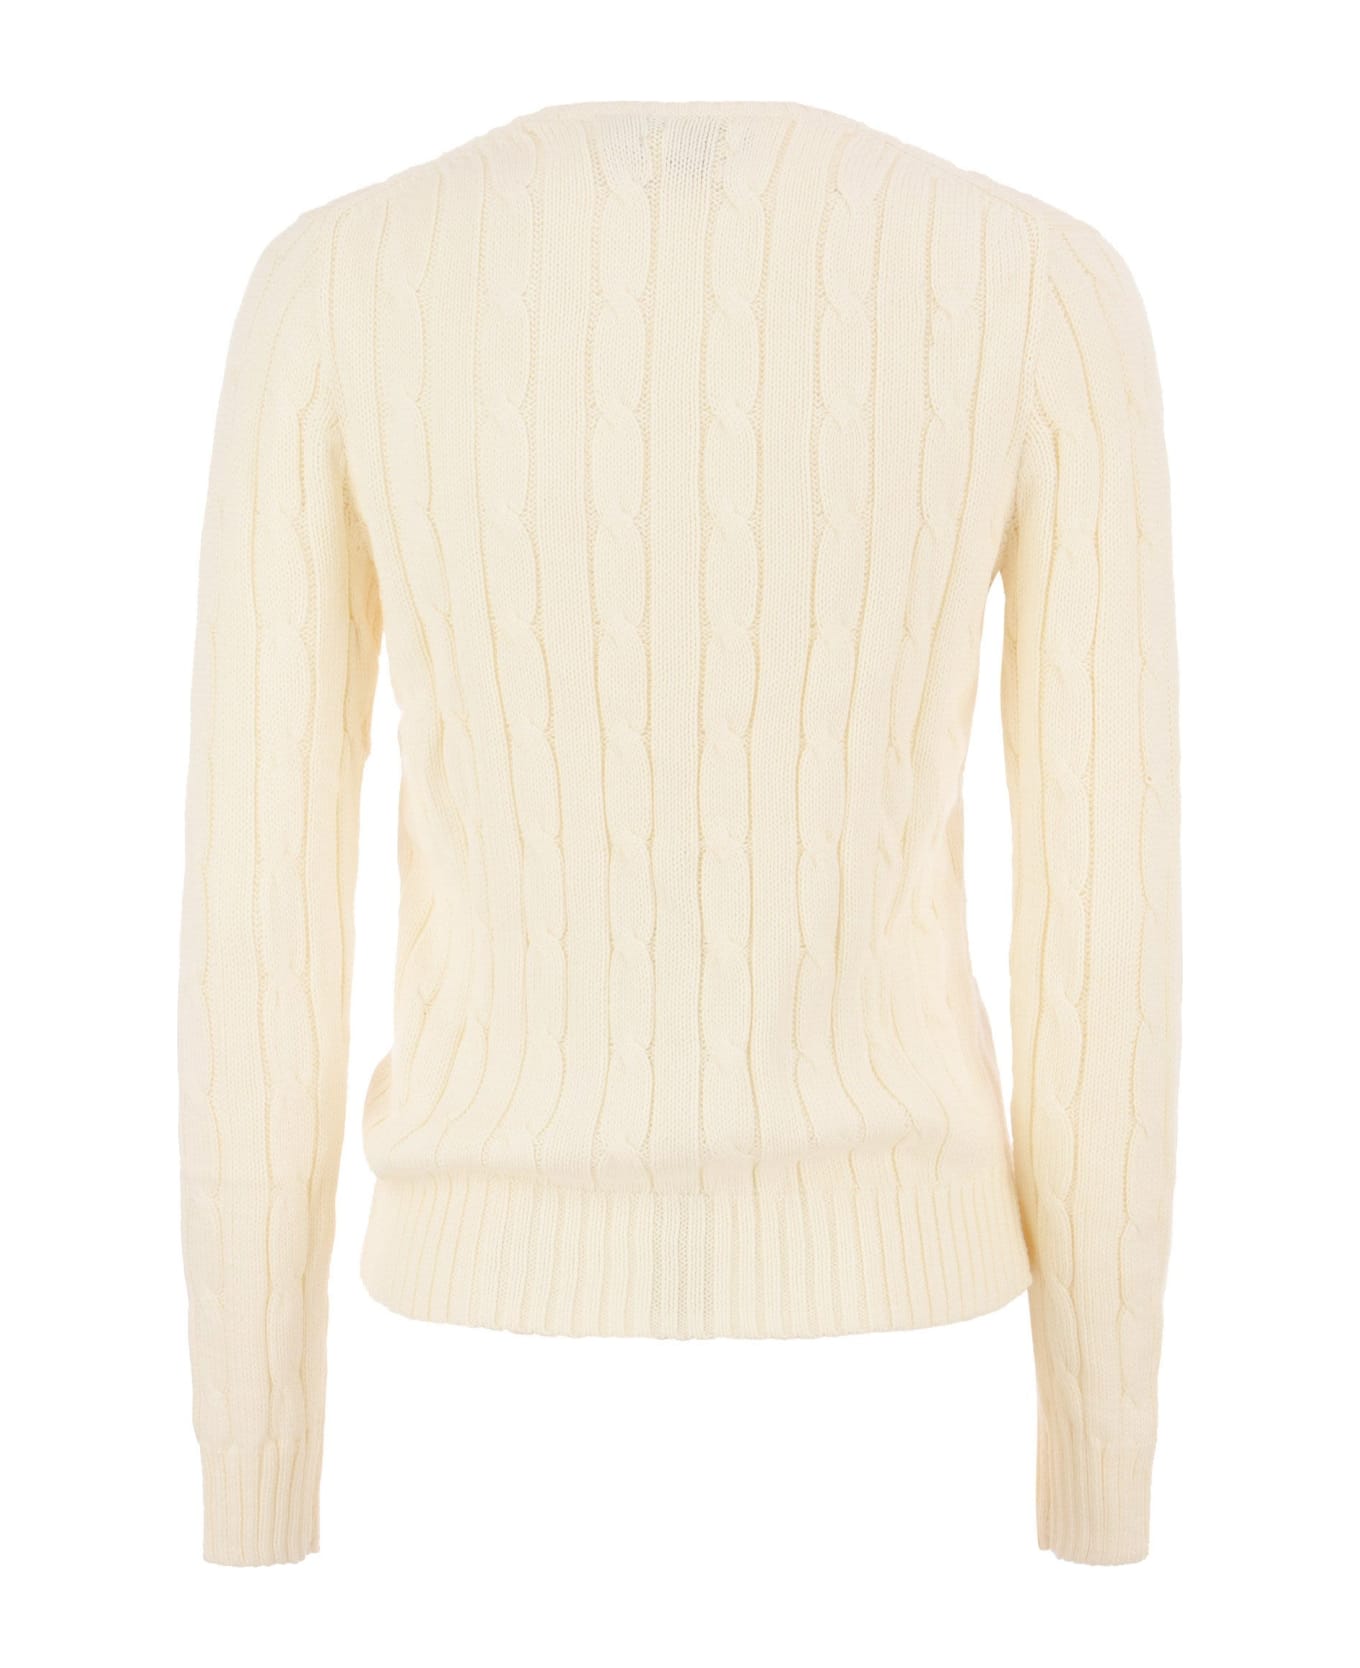 Polo Ralph Lauren Sweater - White ニットウェア